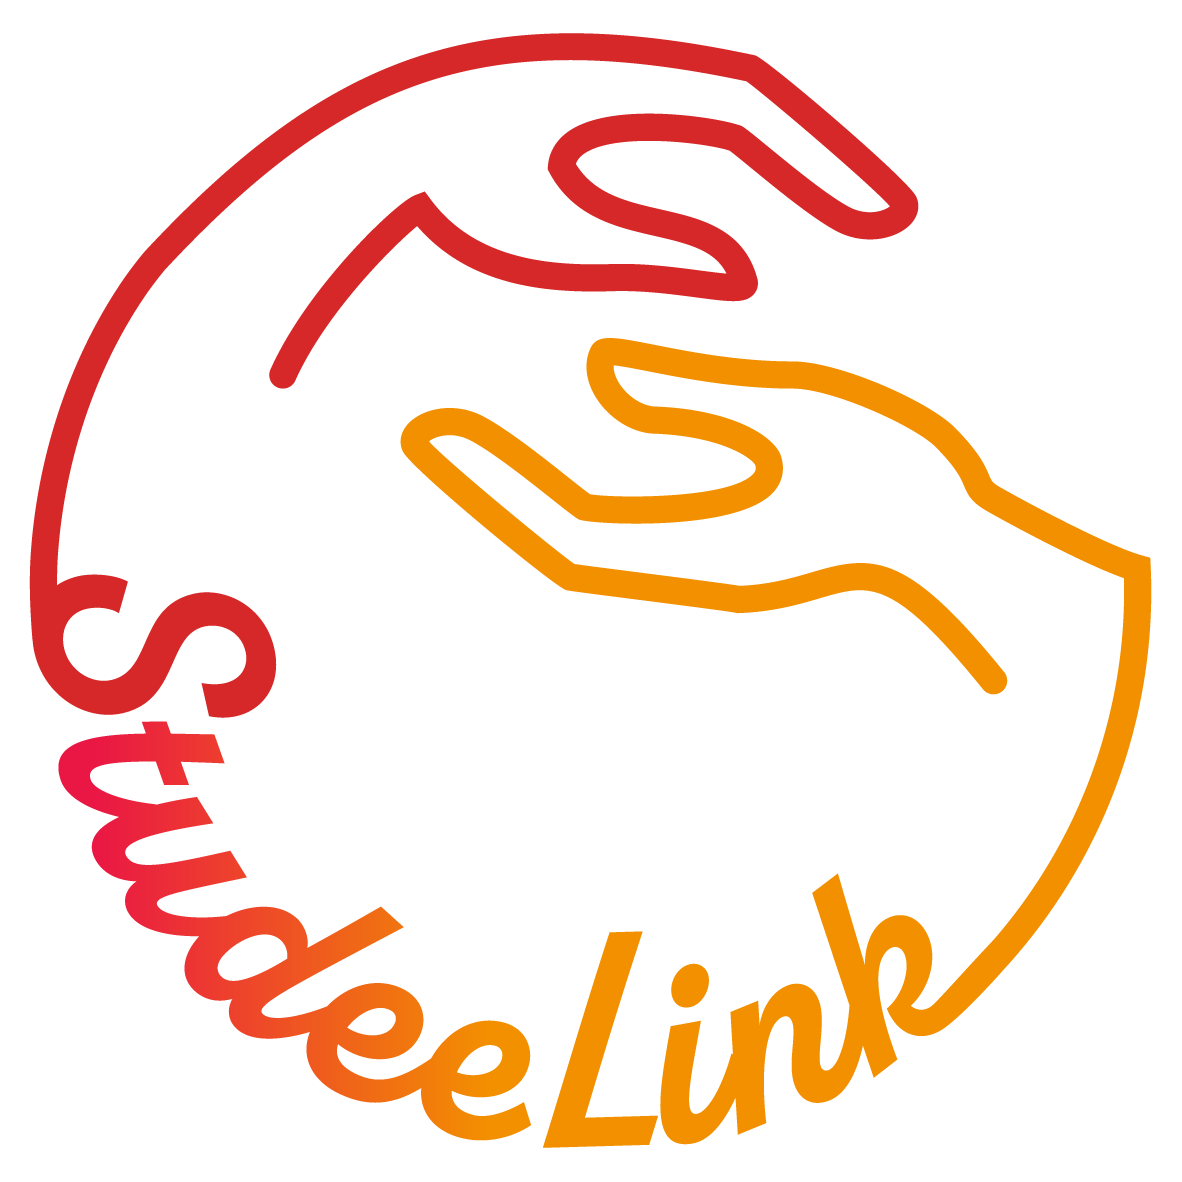 StudeeLink, un chatbot qui met en relation des étudiants en situation d’isolement ou de mal-être avec des structures aidantes locales ou des lignes d’écoute nationales.